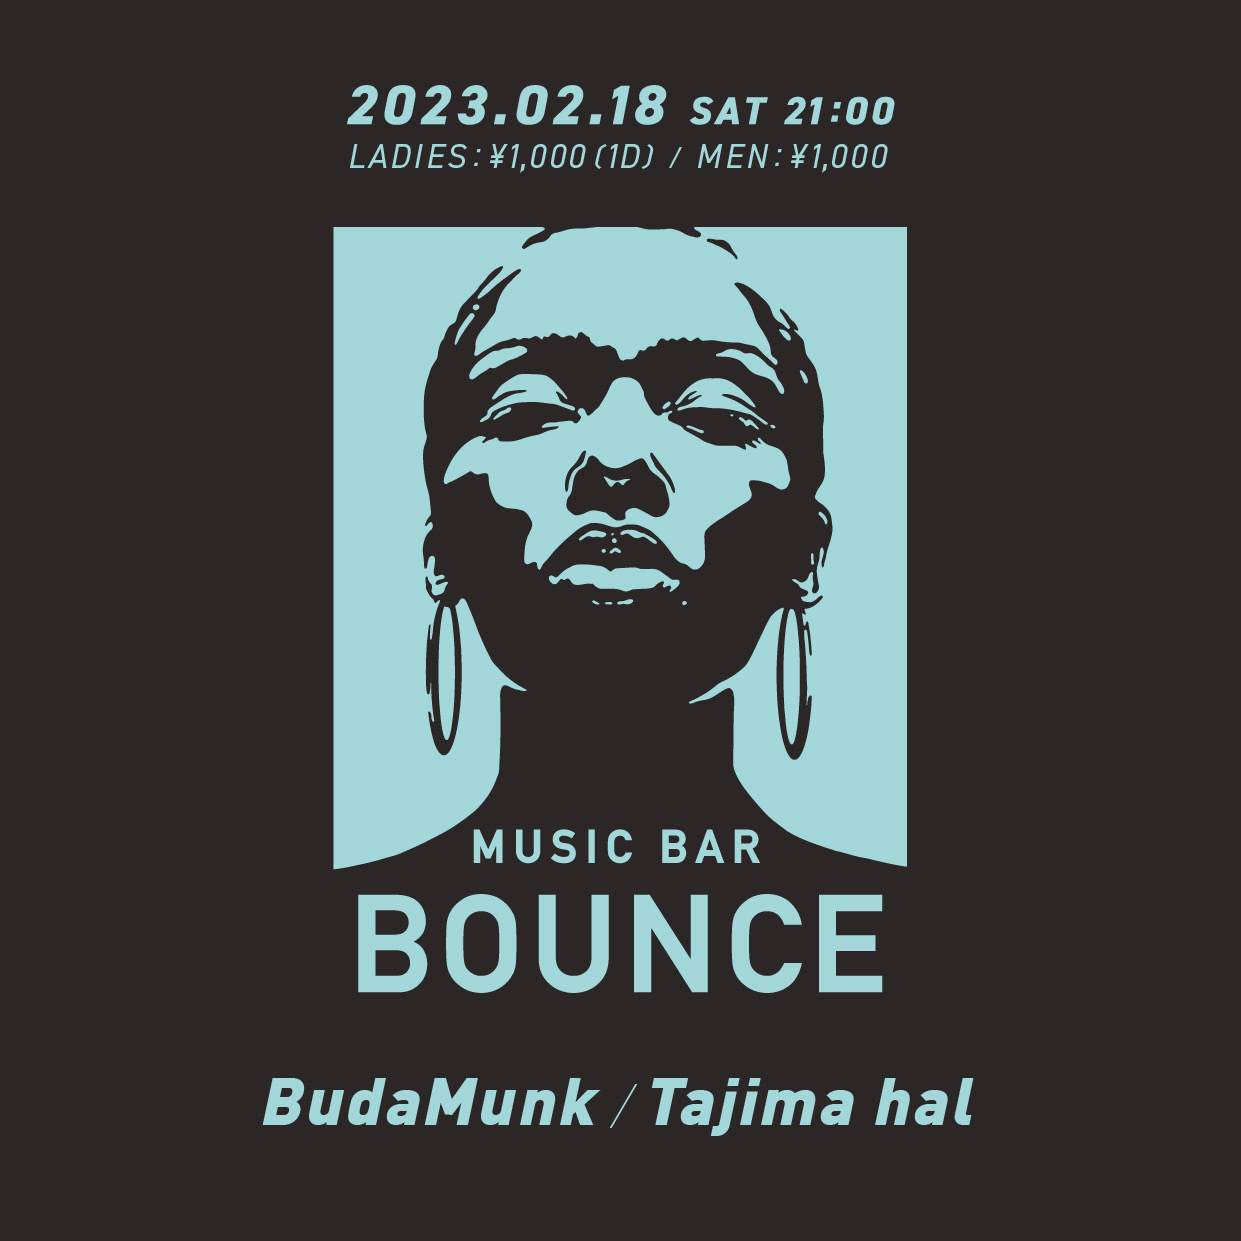 MUSIC BAR BOUNCE - フライヤー表